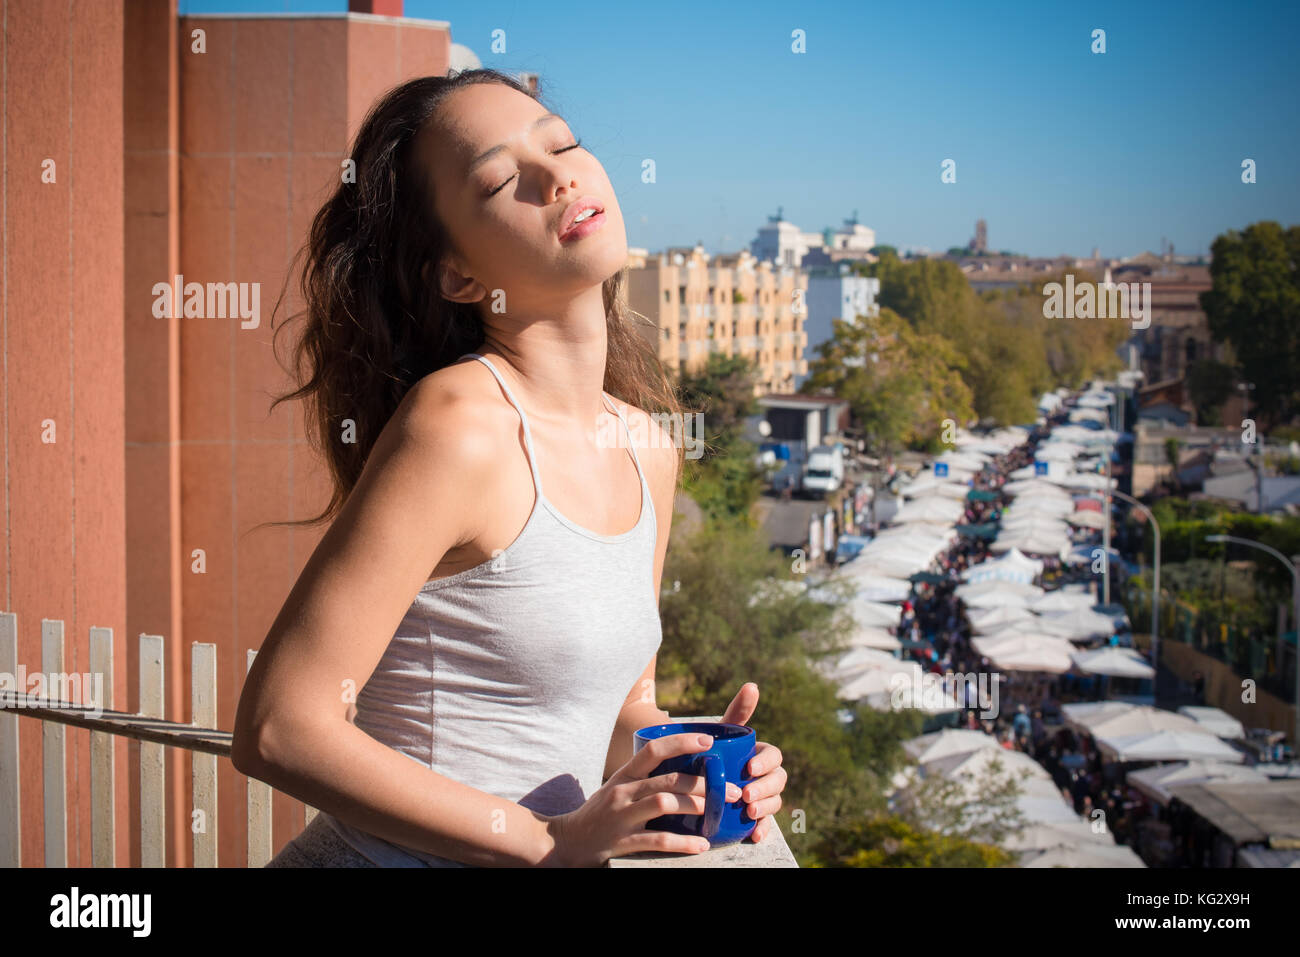 Jungen asiatischen Teenager Frau auf dem Balkon hoch geschlossenen Augen Sonnenlicht Blau Becher in die Hände städtischer Hintergrund Stadt Lebensstil Stockfoto